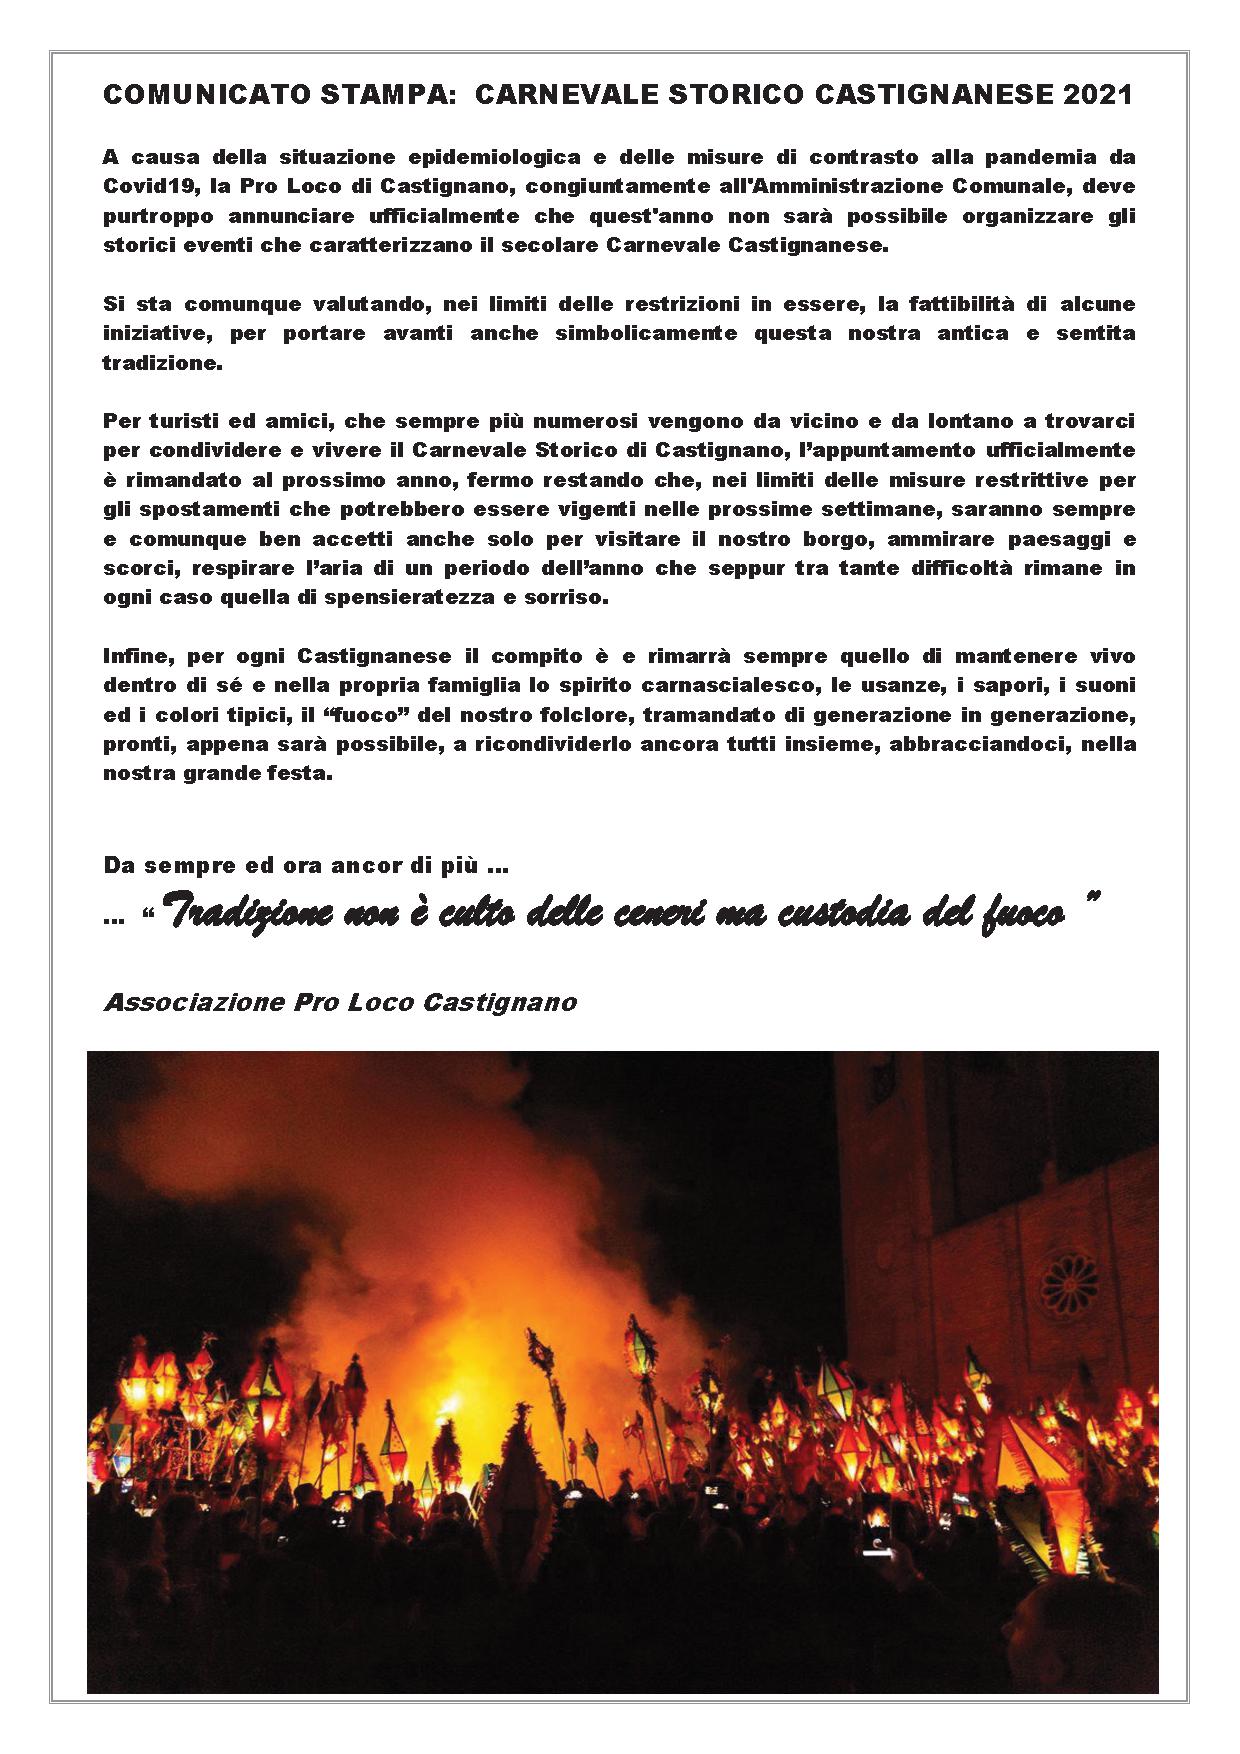 Comunicato stampa Carnevale Storico Castignanese 2021